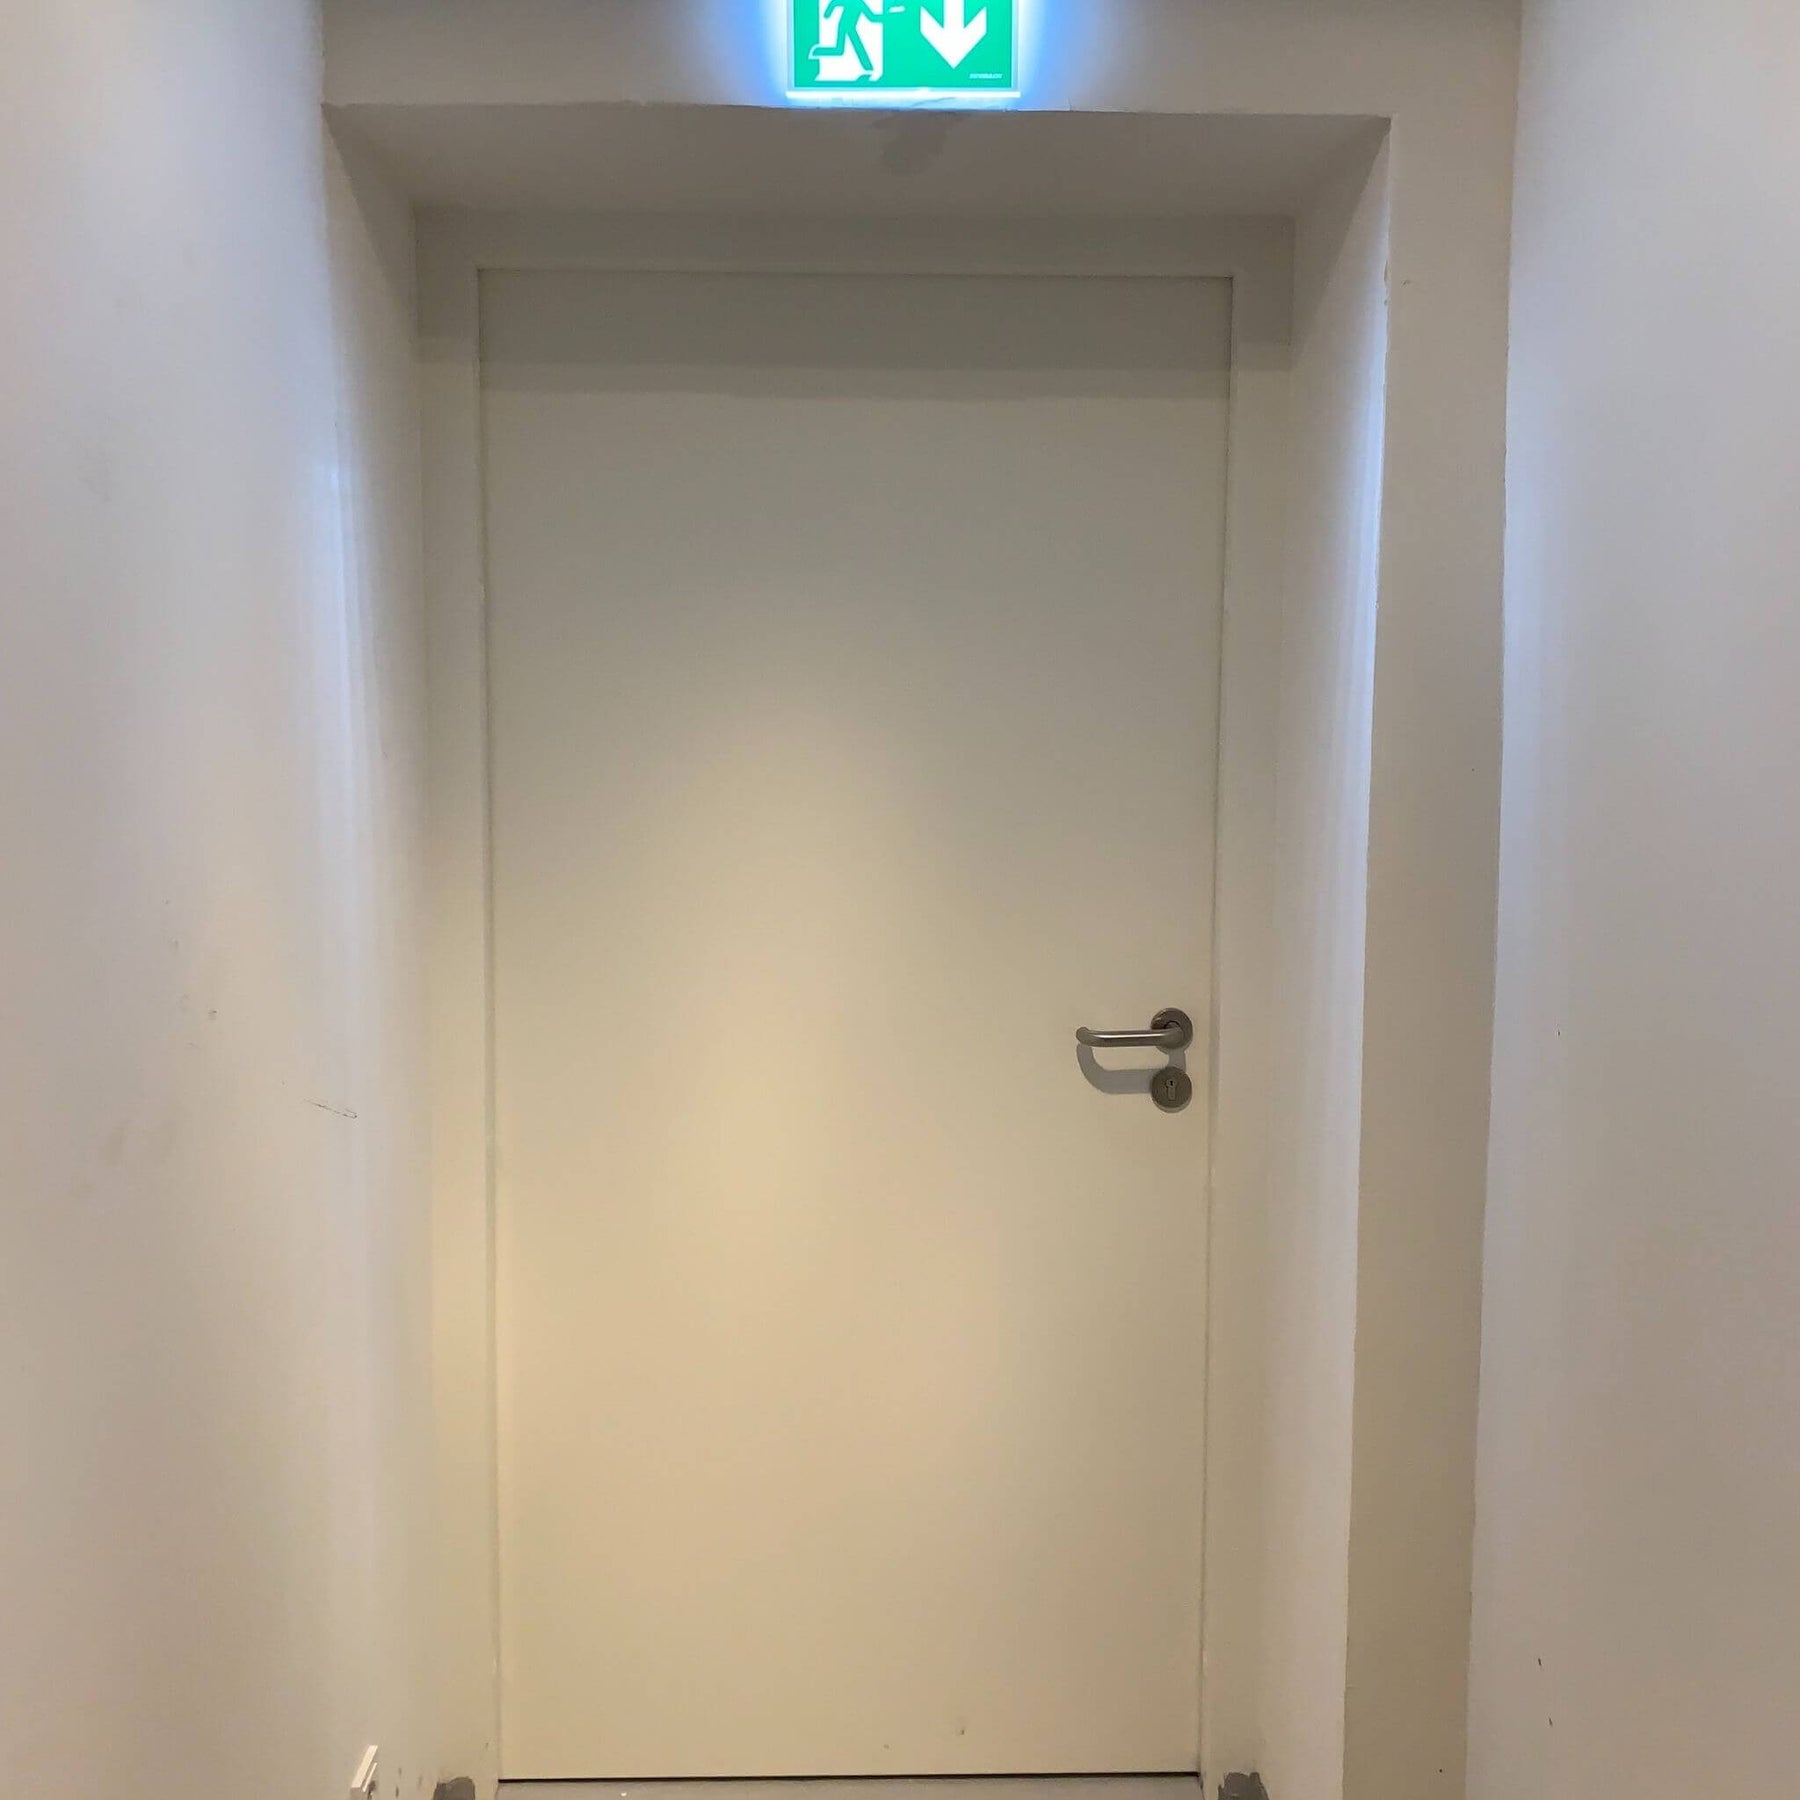 Fluchttür bzw. Paniktür nach EN179 Brandschutztür als Kellertür